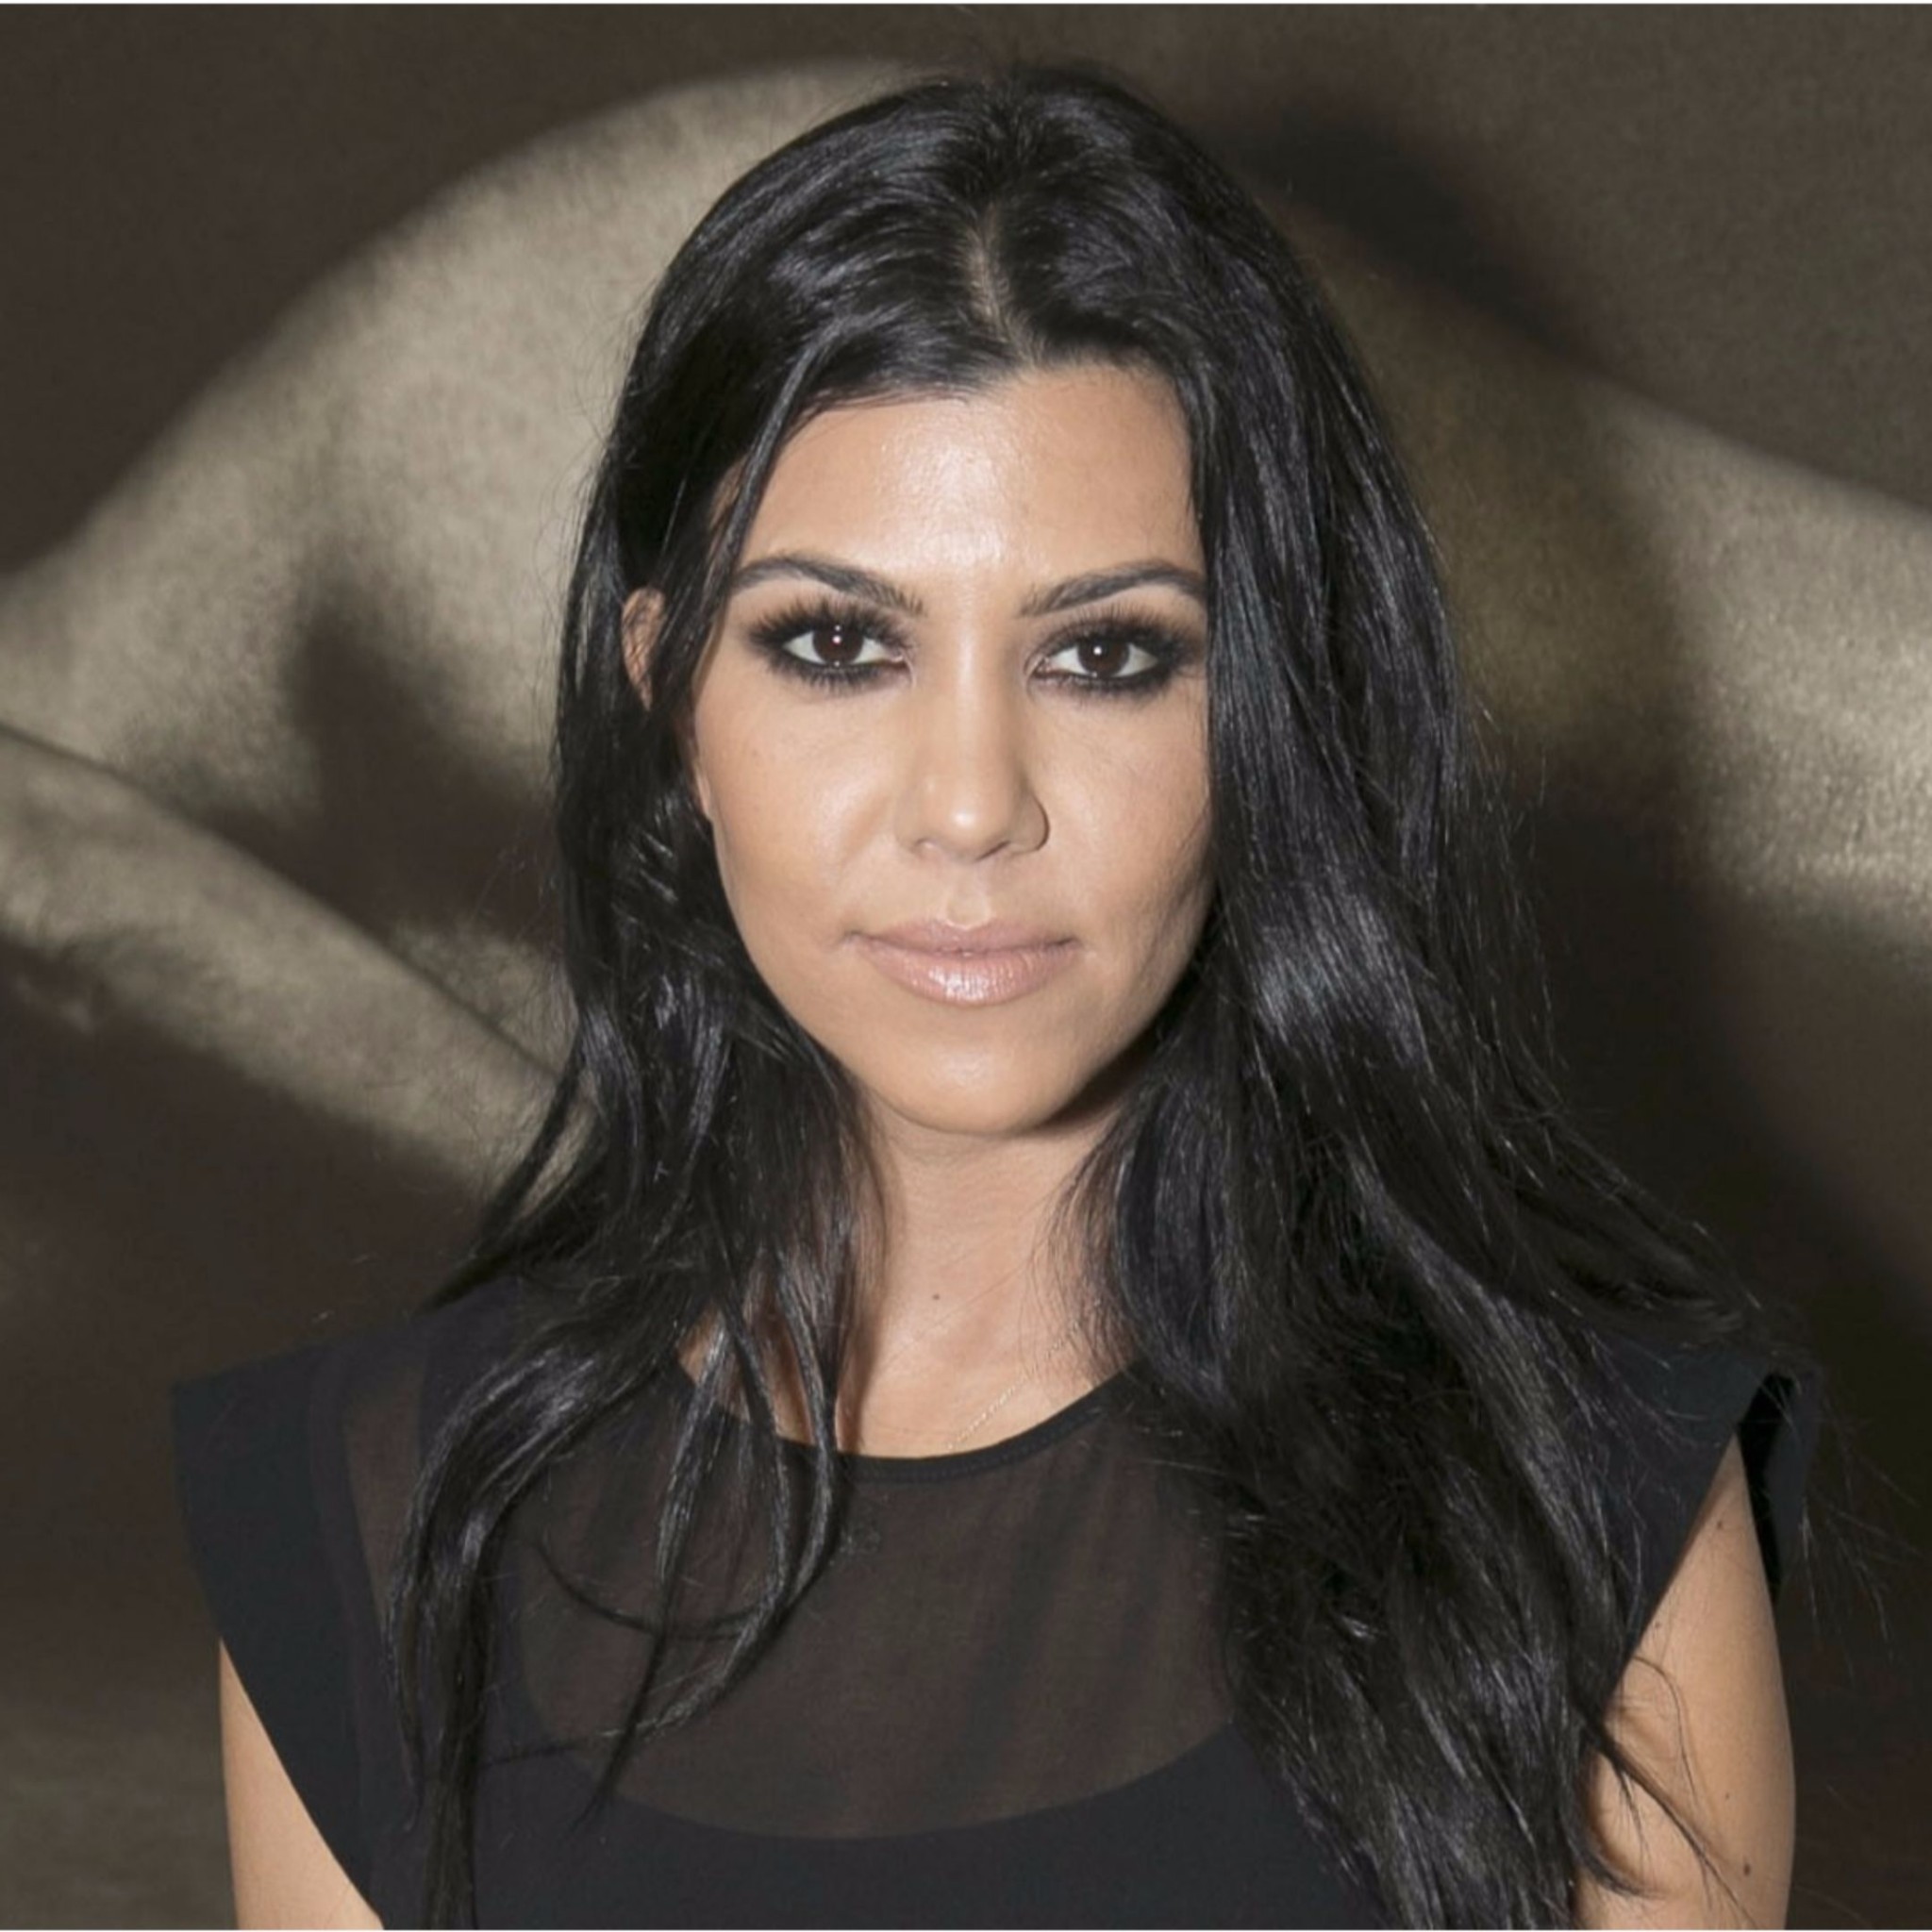 Kourtney Kardashian Wears Crop Top With Lace Bra